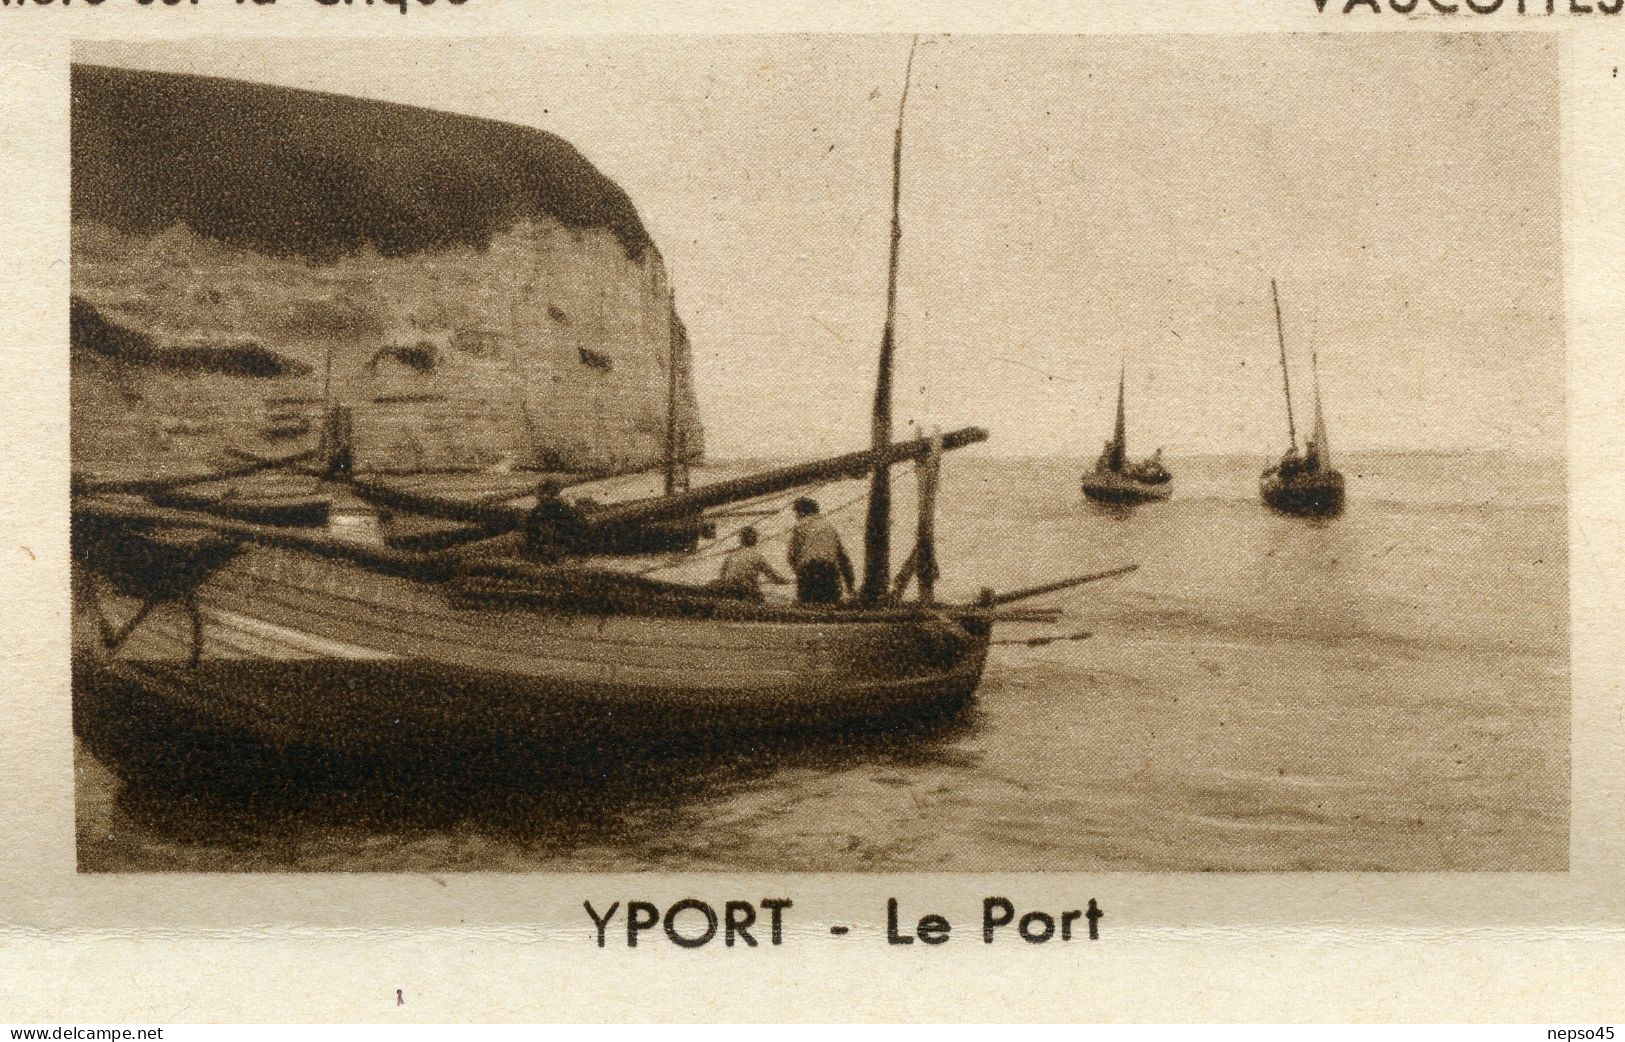 Lettre-Enveloppe écrite de 1950.Yport seine maritime ( 76) la Crique.Vaucottes panorama.Fécamp.les falaises.